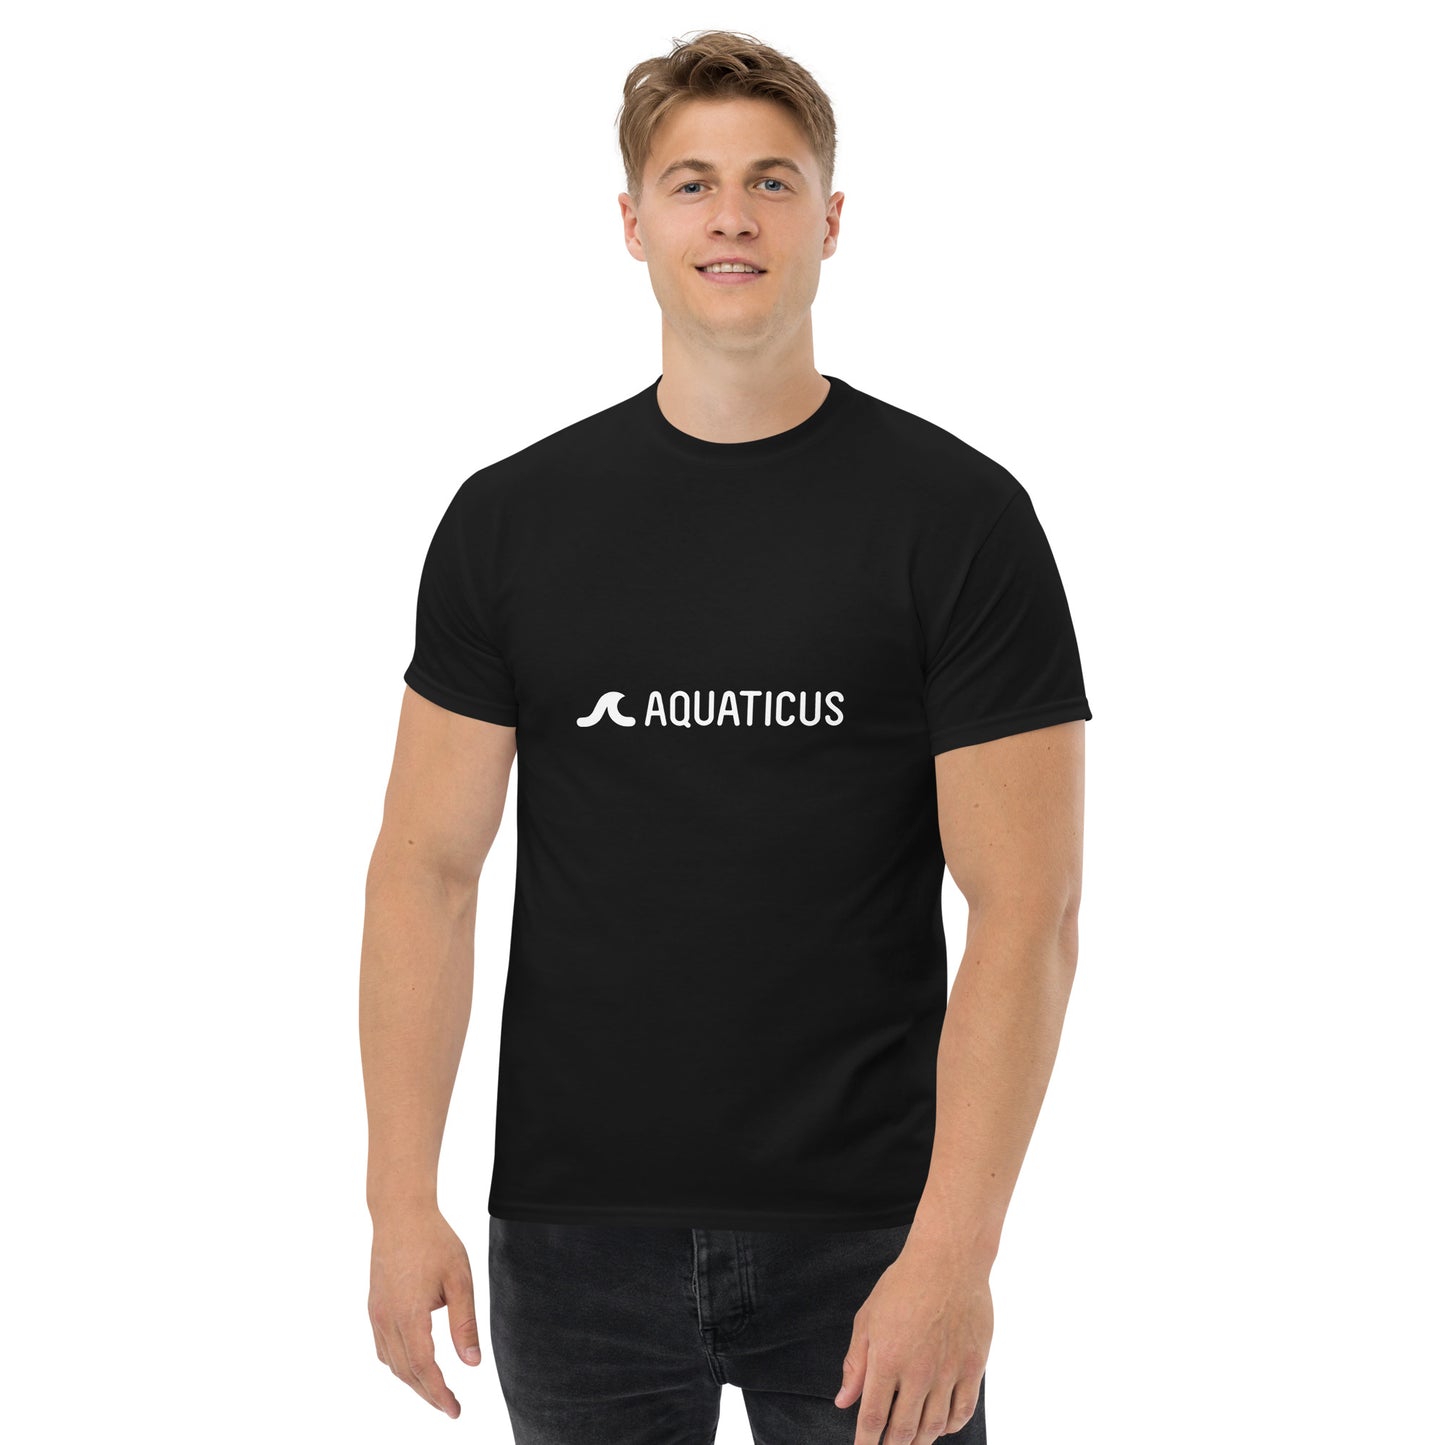 AQUATICUS - Men's classic tee